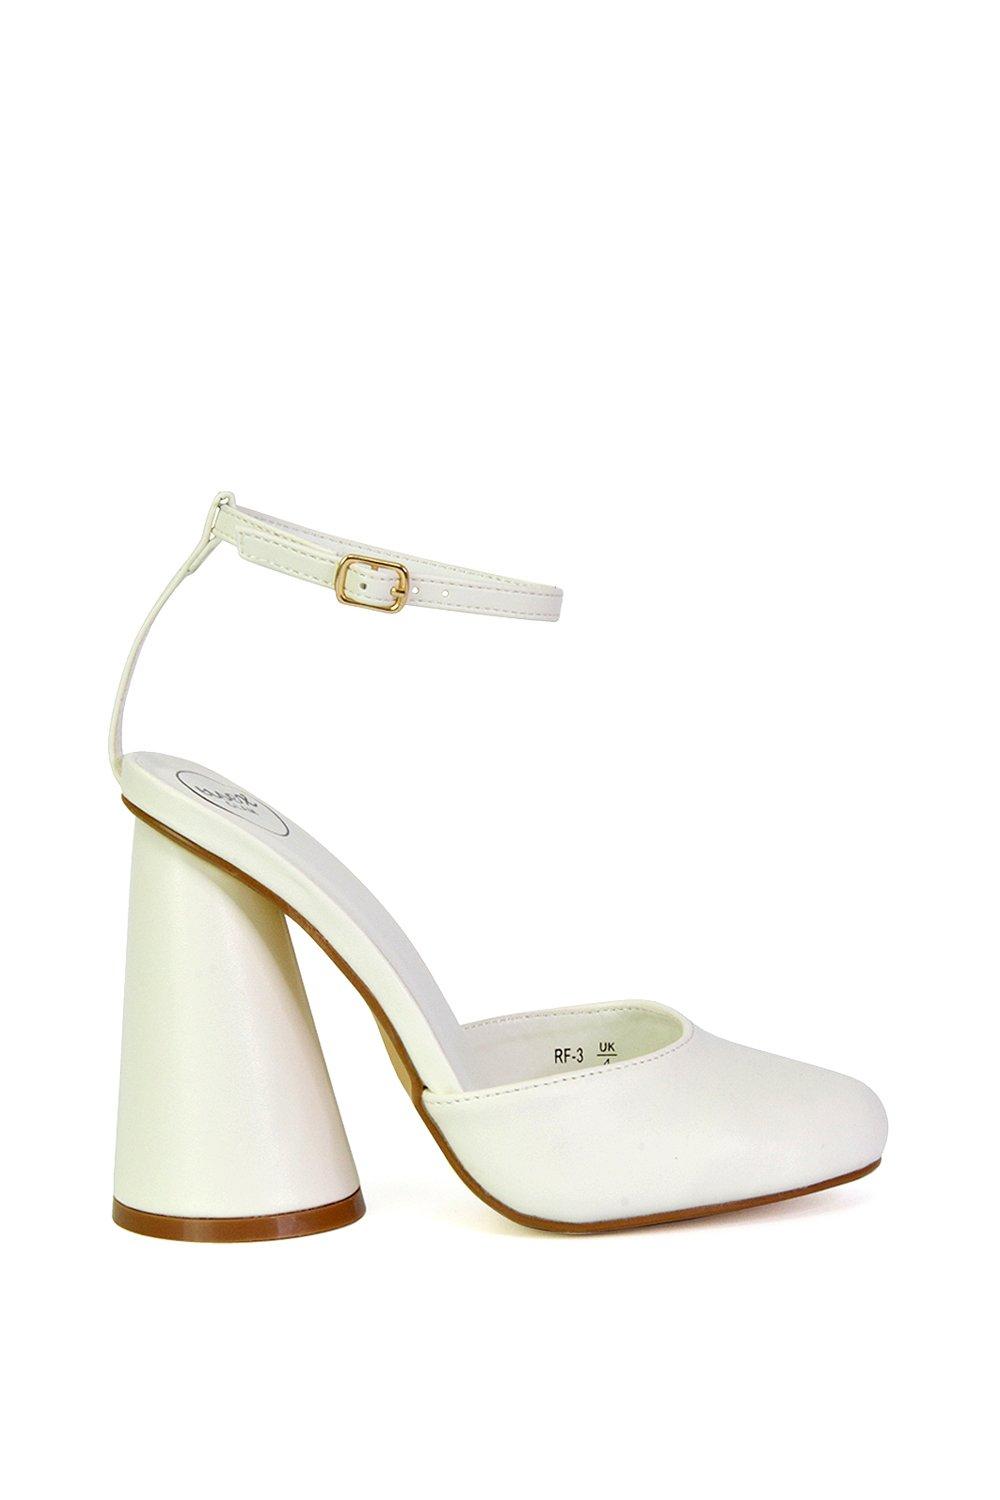 Эффектный каблук с блоком цилиндров и ремешком на щиколотке Ekin XY London, белый туфли на каблуках rosalia mule frye камень